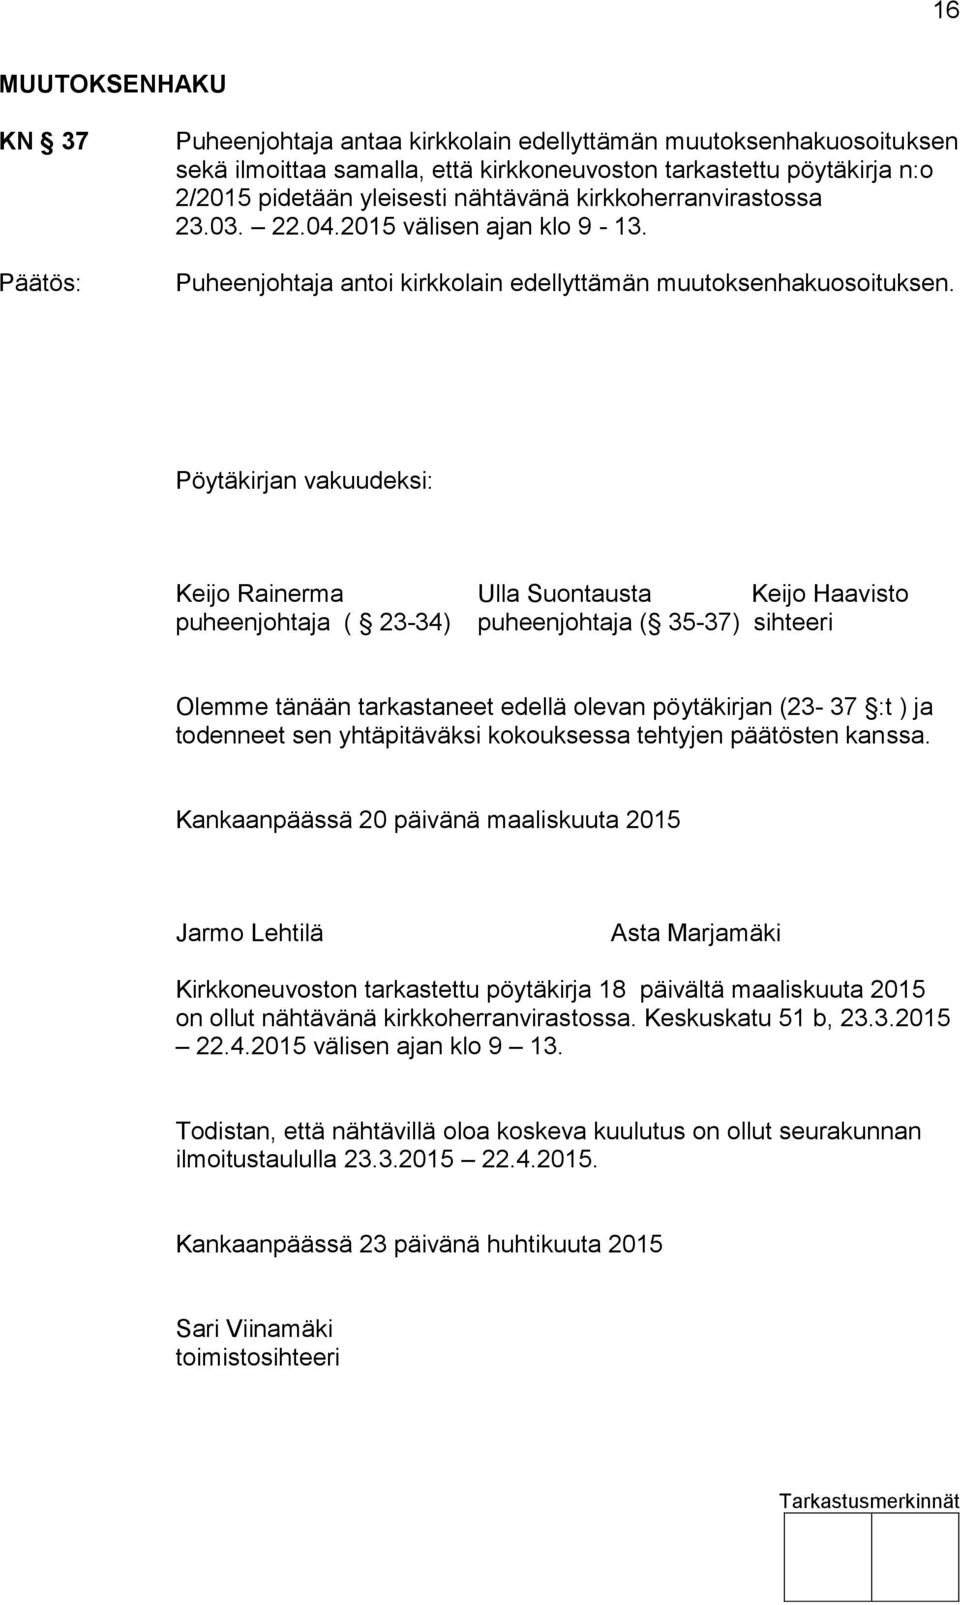 Pöytäkirjan vakuudeksi: Keijo Rainerma Ulla Suontausta Keijo Haavisto puheenjohtaja ( 23-34) puheenjohtaja ( 35-37) sihteeri Olemme tänään tarkastaneet edellä olevan pöytäkirjan (23-37 :t ) ja